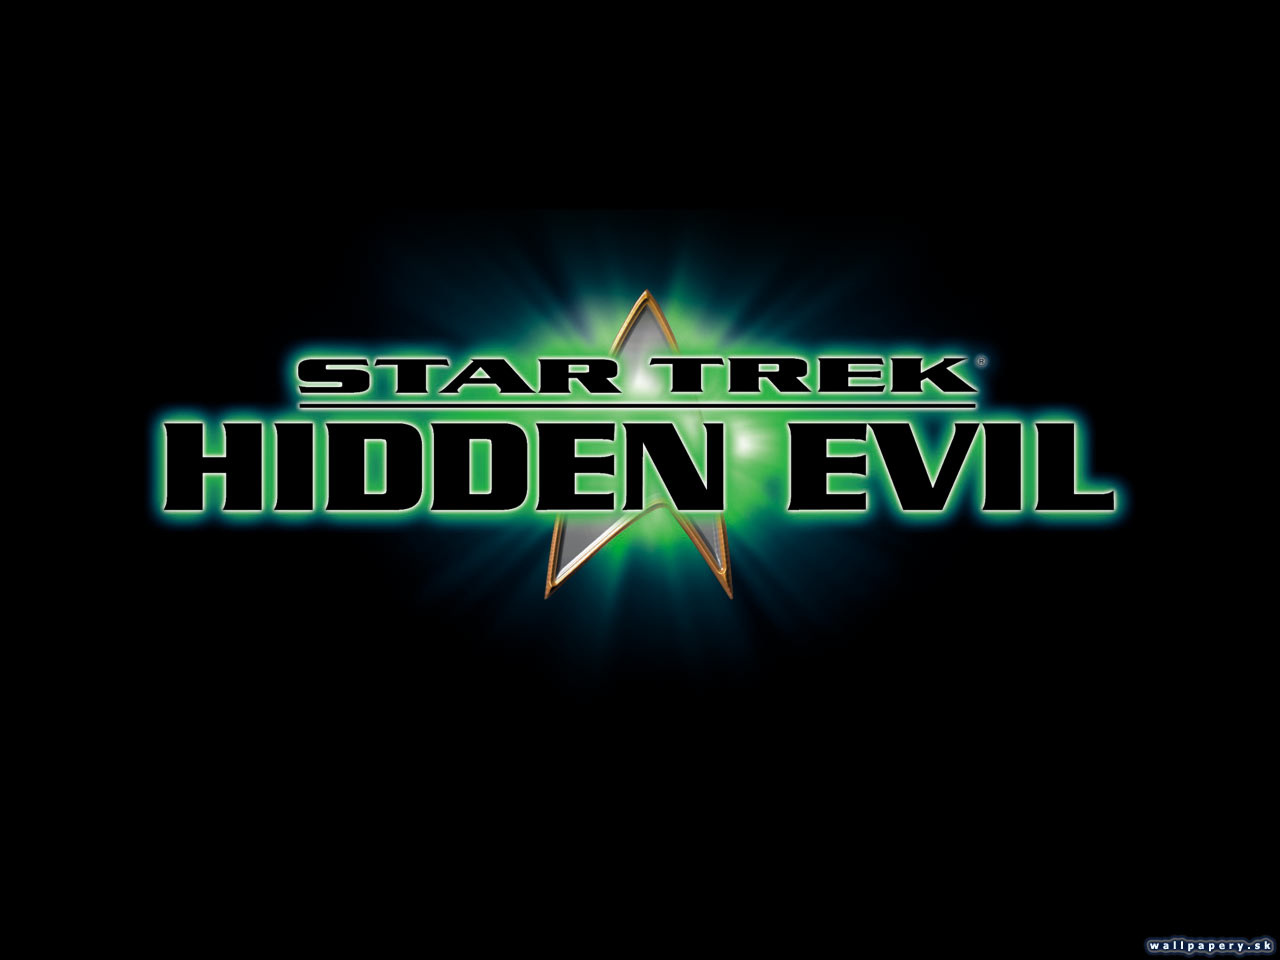 Star Trek: Hidden Evil - wallpaper 2